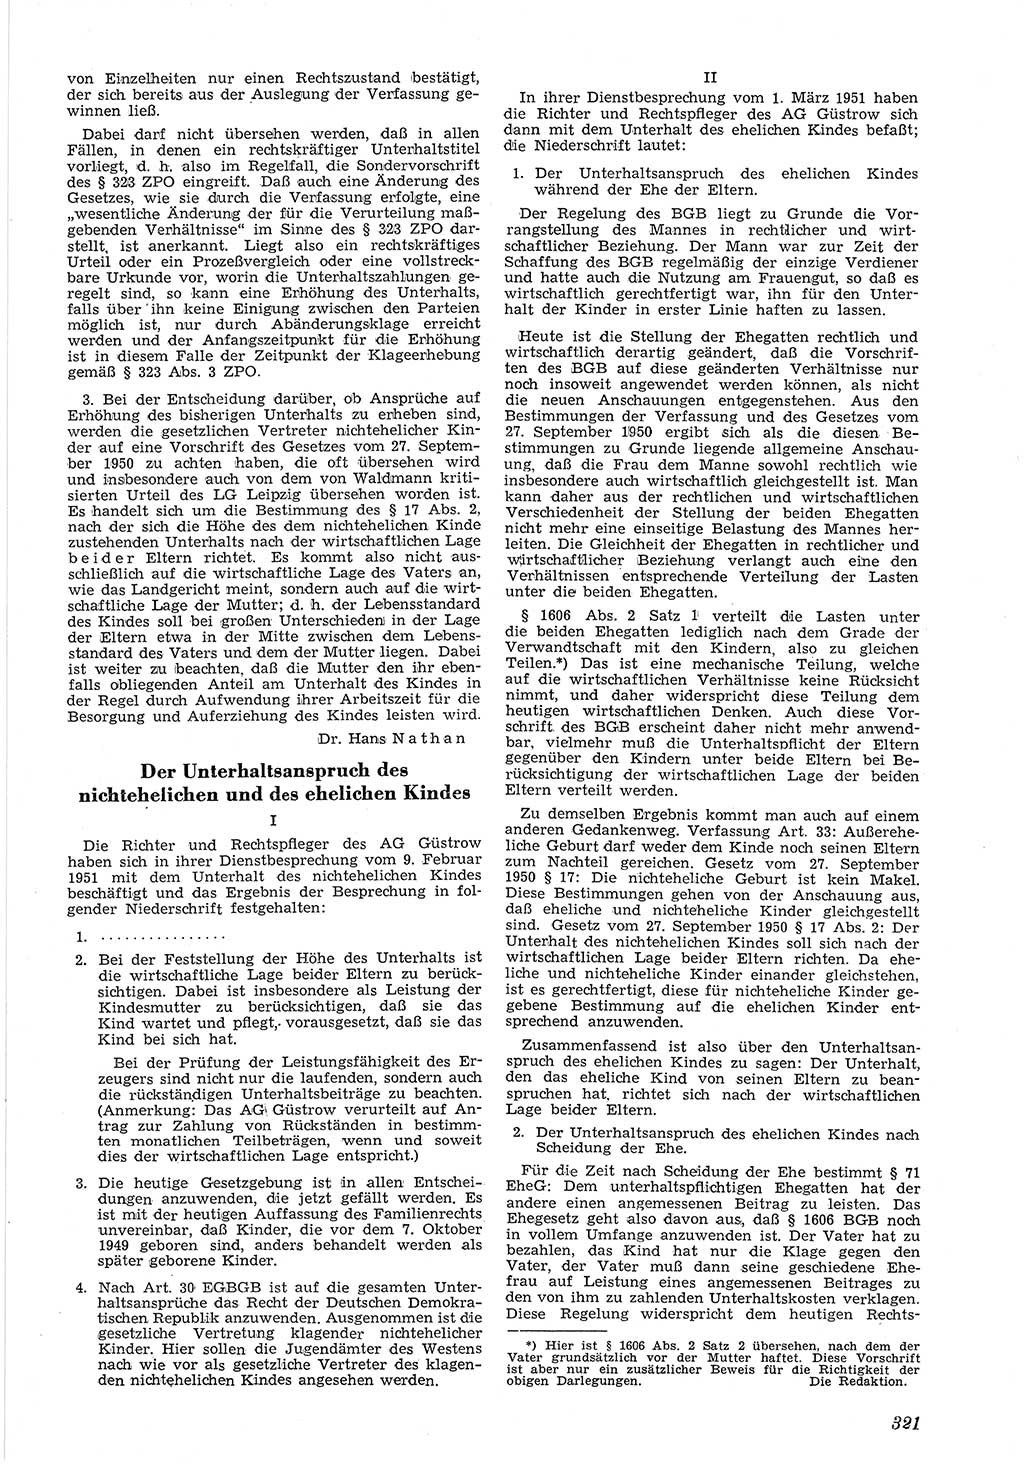 Neue Justiz (NJ), Zeitschrift für Recht und Rechtswissenschaft [Deutsche Demokratische Republik (DDR)], 5. Jahrgang 1951, Seite 321 (NJ DDR 1951, S. 321)